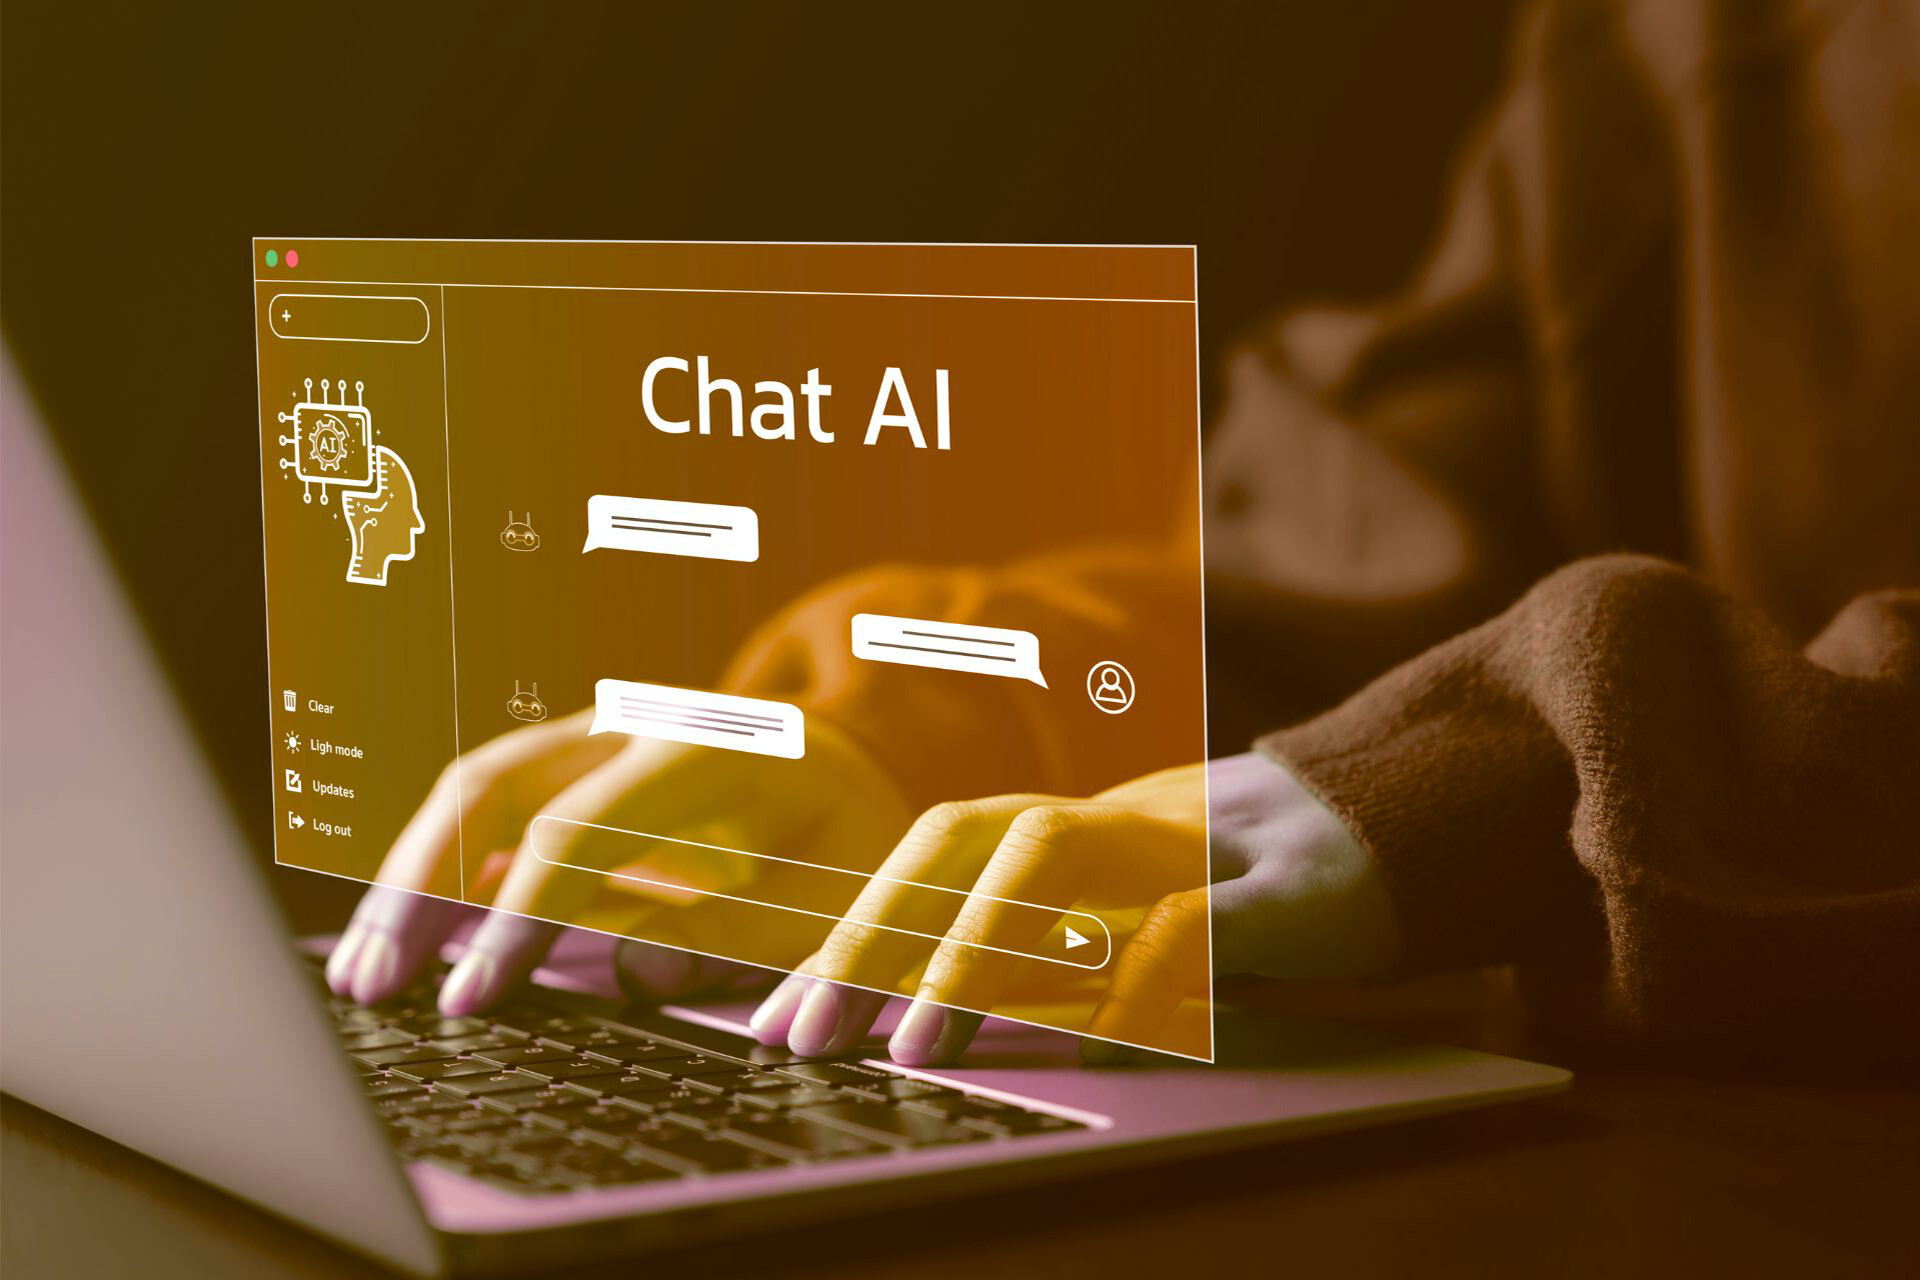 Een persoon gebruikt een laptop met een AI-chatprogramma, een praktische praktische toepassing van kunstmatige intelligentie.